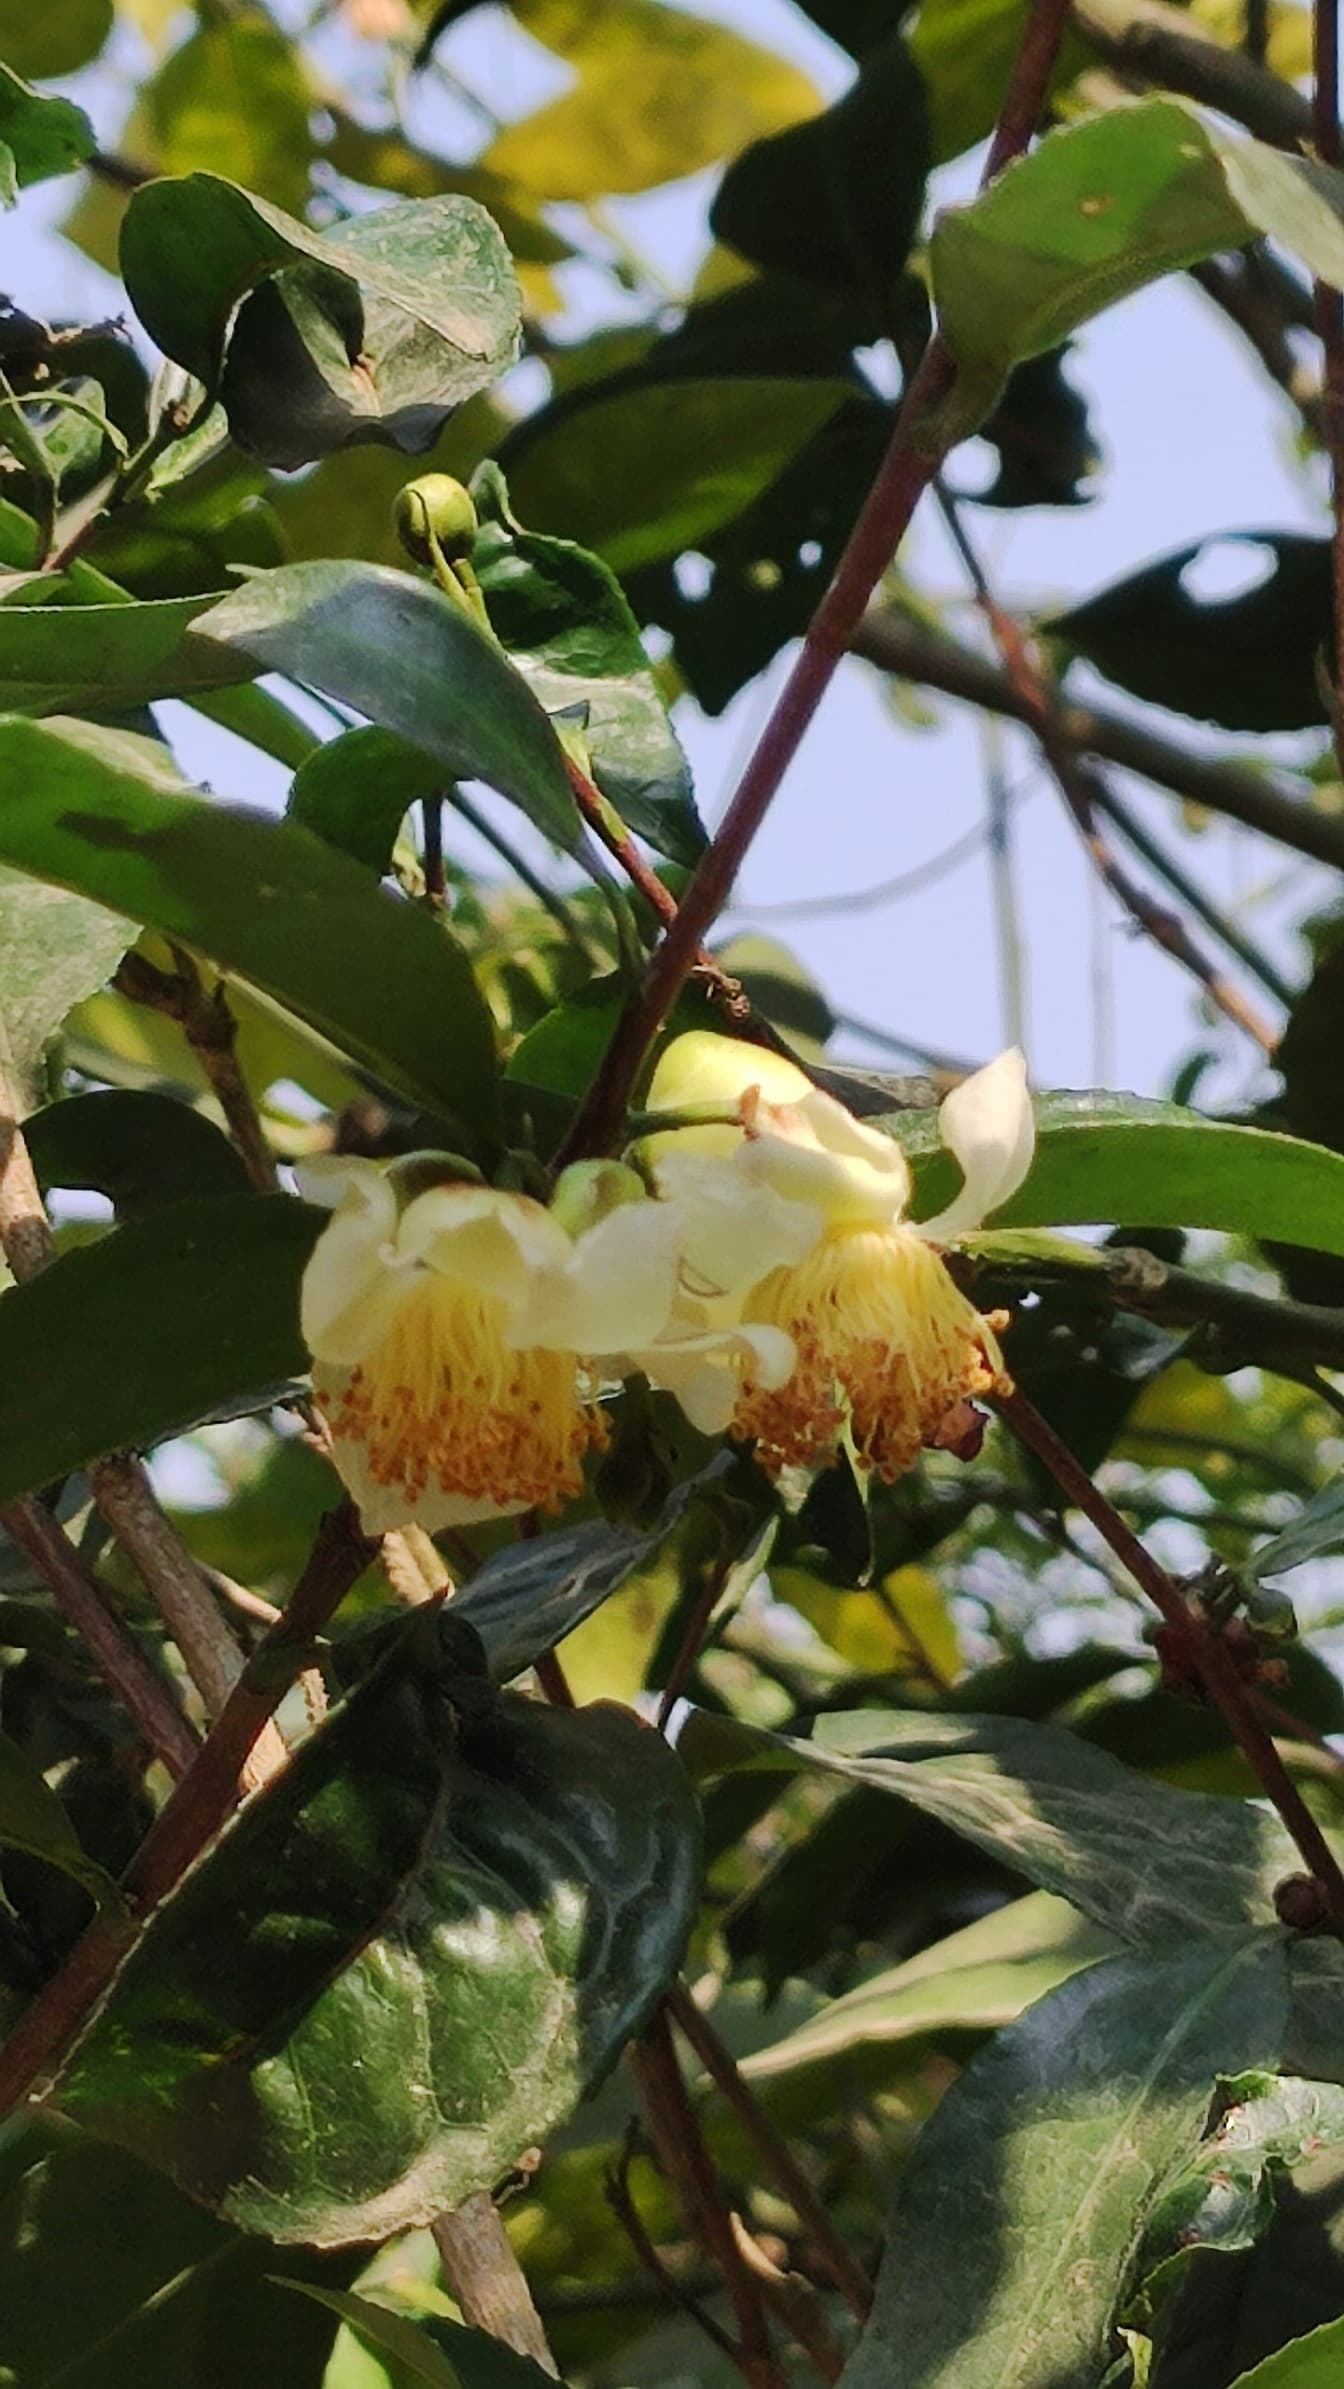 Hoa dại hoa trà màu vàng (Camellia sinensis) giữa cành và lá xanh